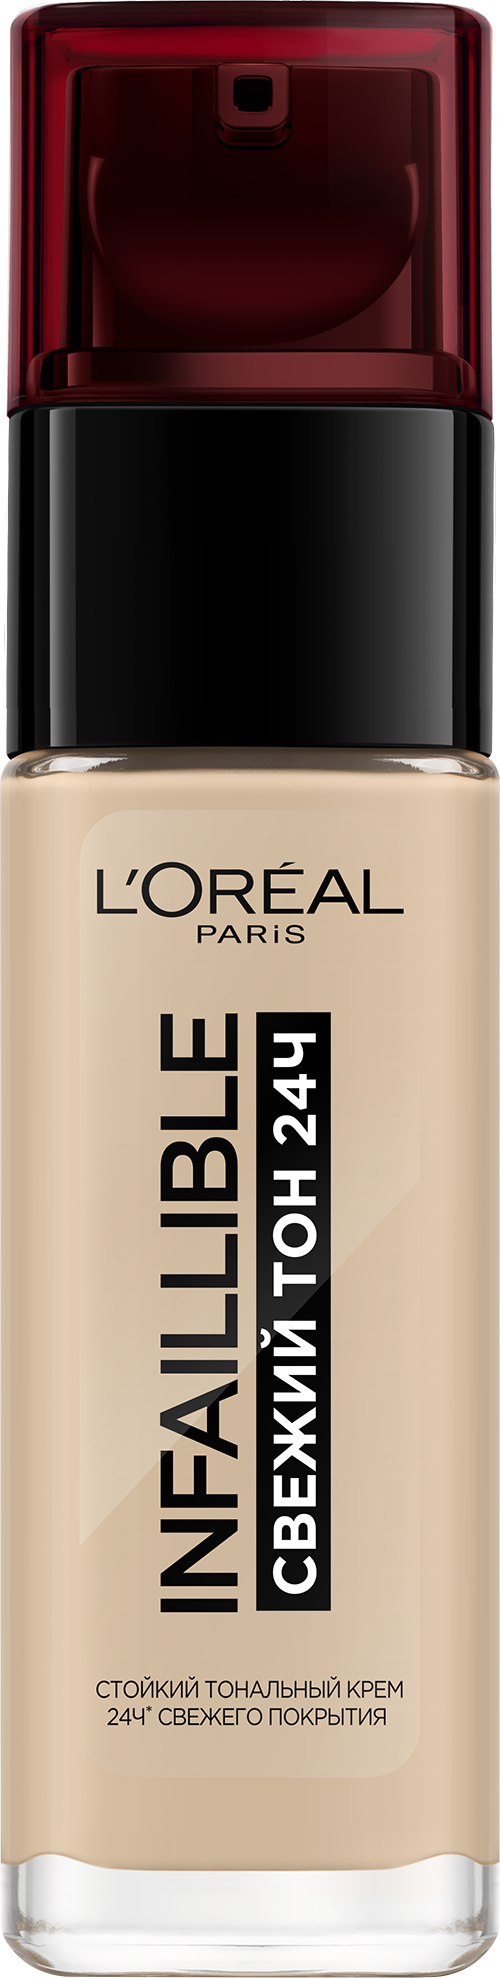 Купить Тональный крем L'Oreal Paris Infallible 24h Stay Fresh Foundation 130 30 мл Бежевый